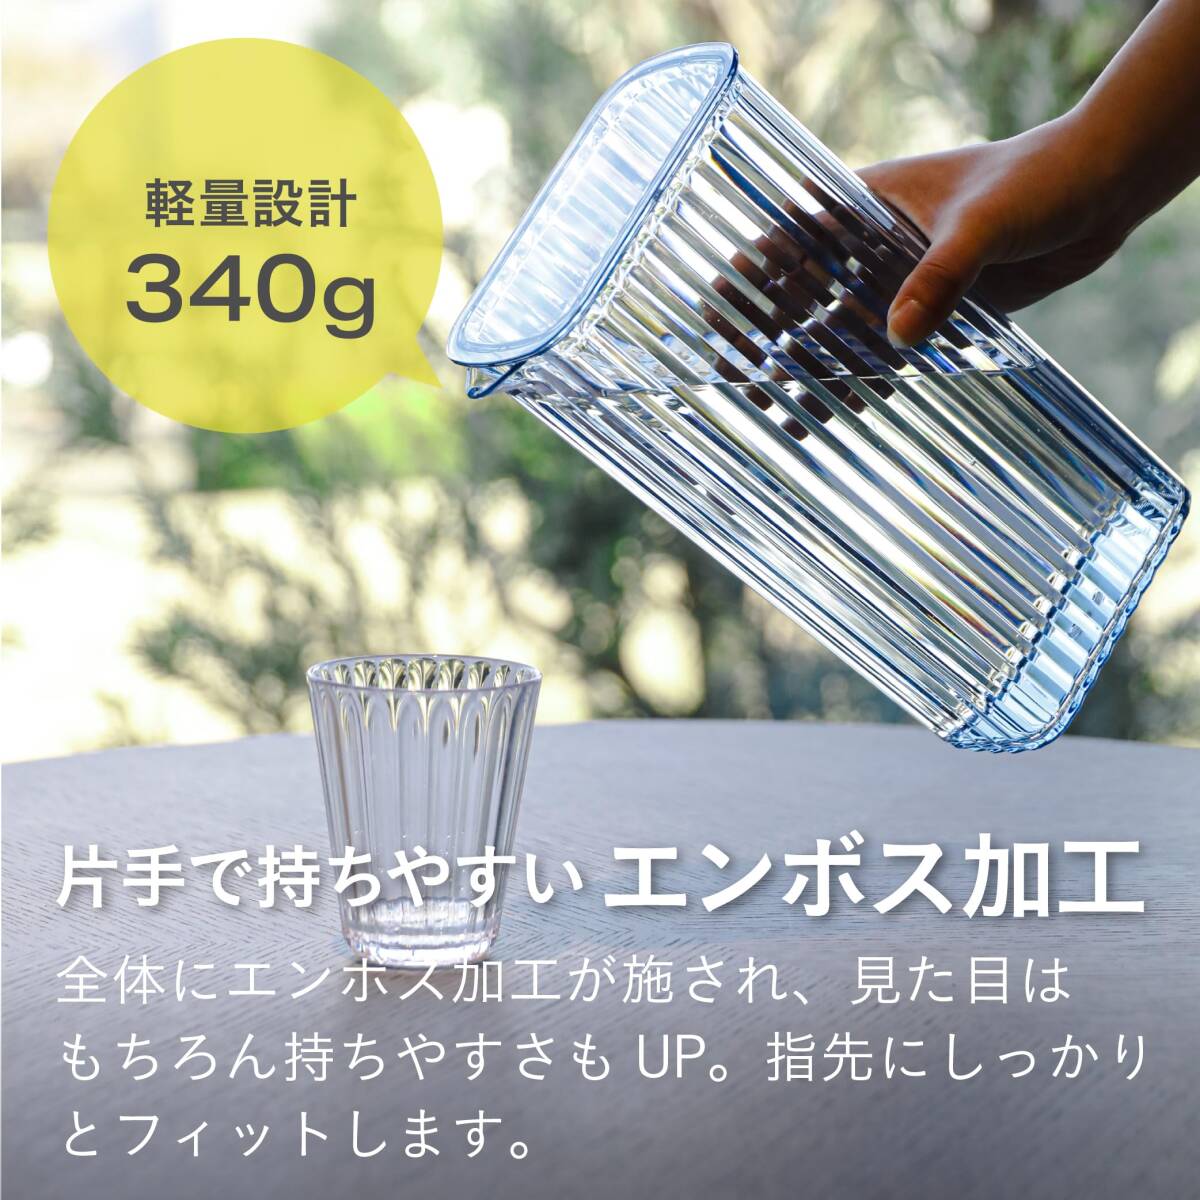 si- Be Japan (CB JAPAN) pitcher blue 2.2L plastic barley tea pot LS Jug UCA